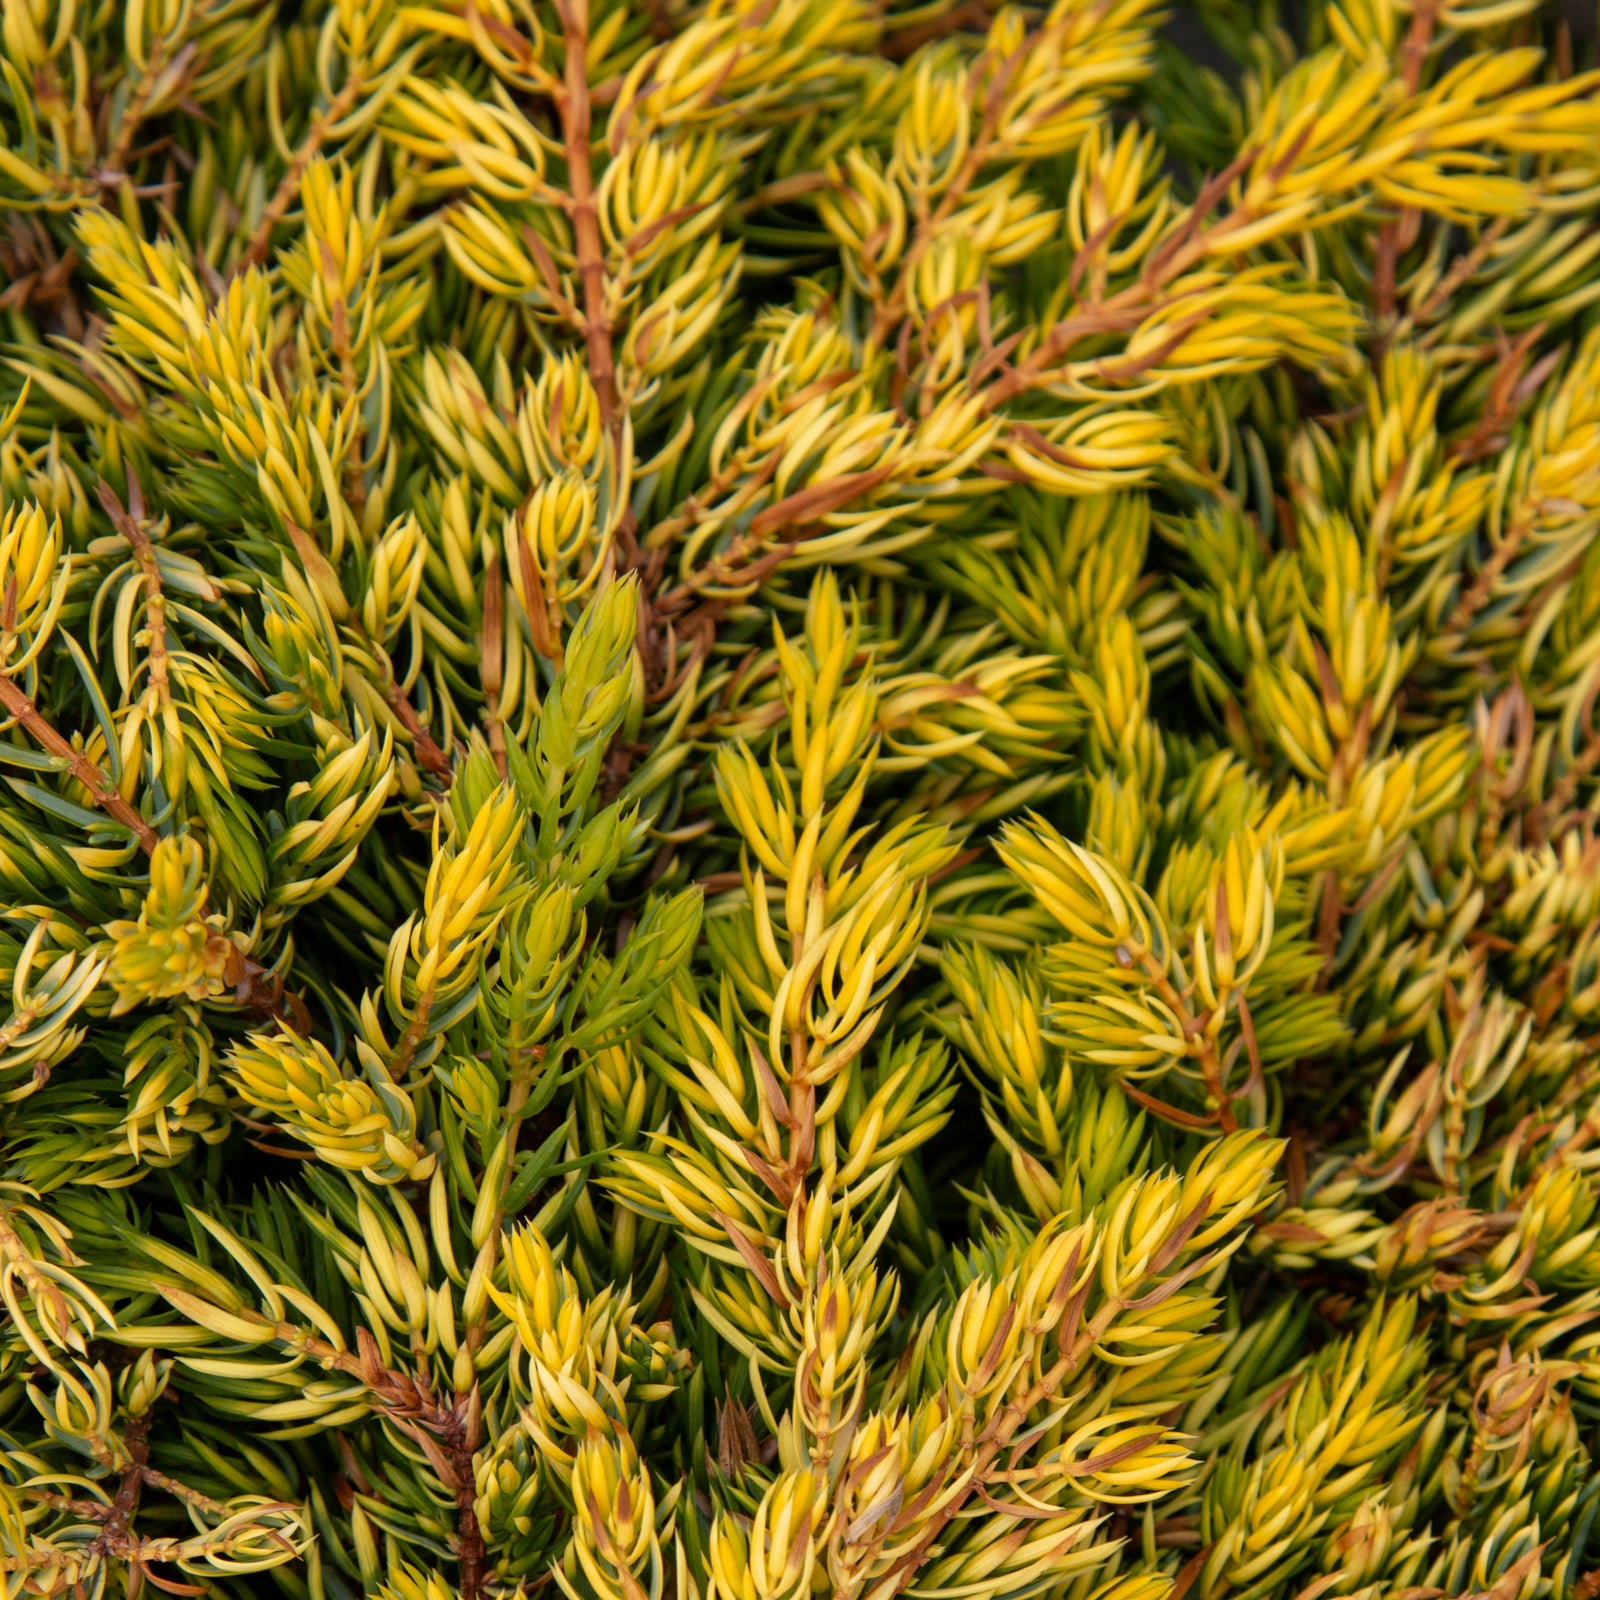 Juniperus communis GoldSchatz - Dwarf Gold Carpet Juniper